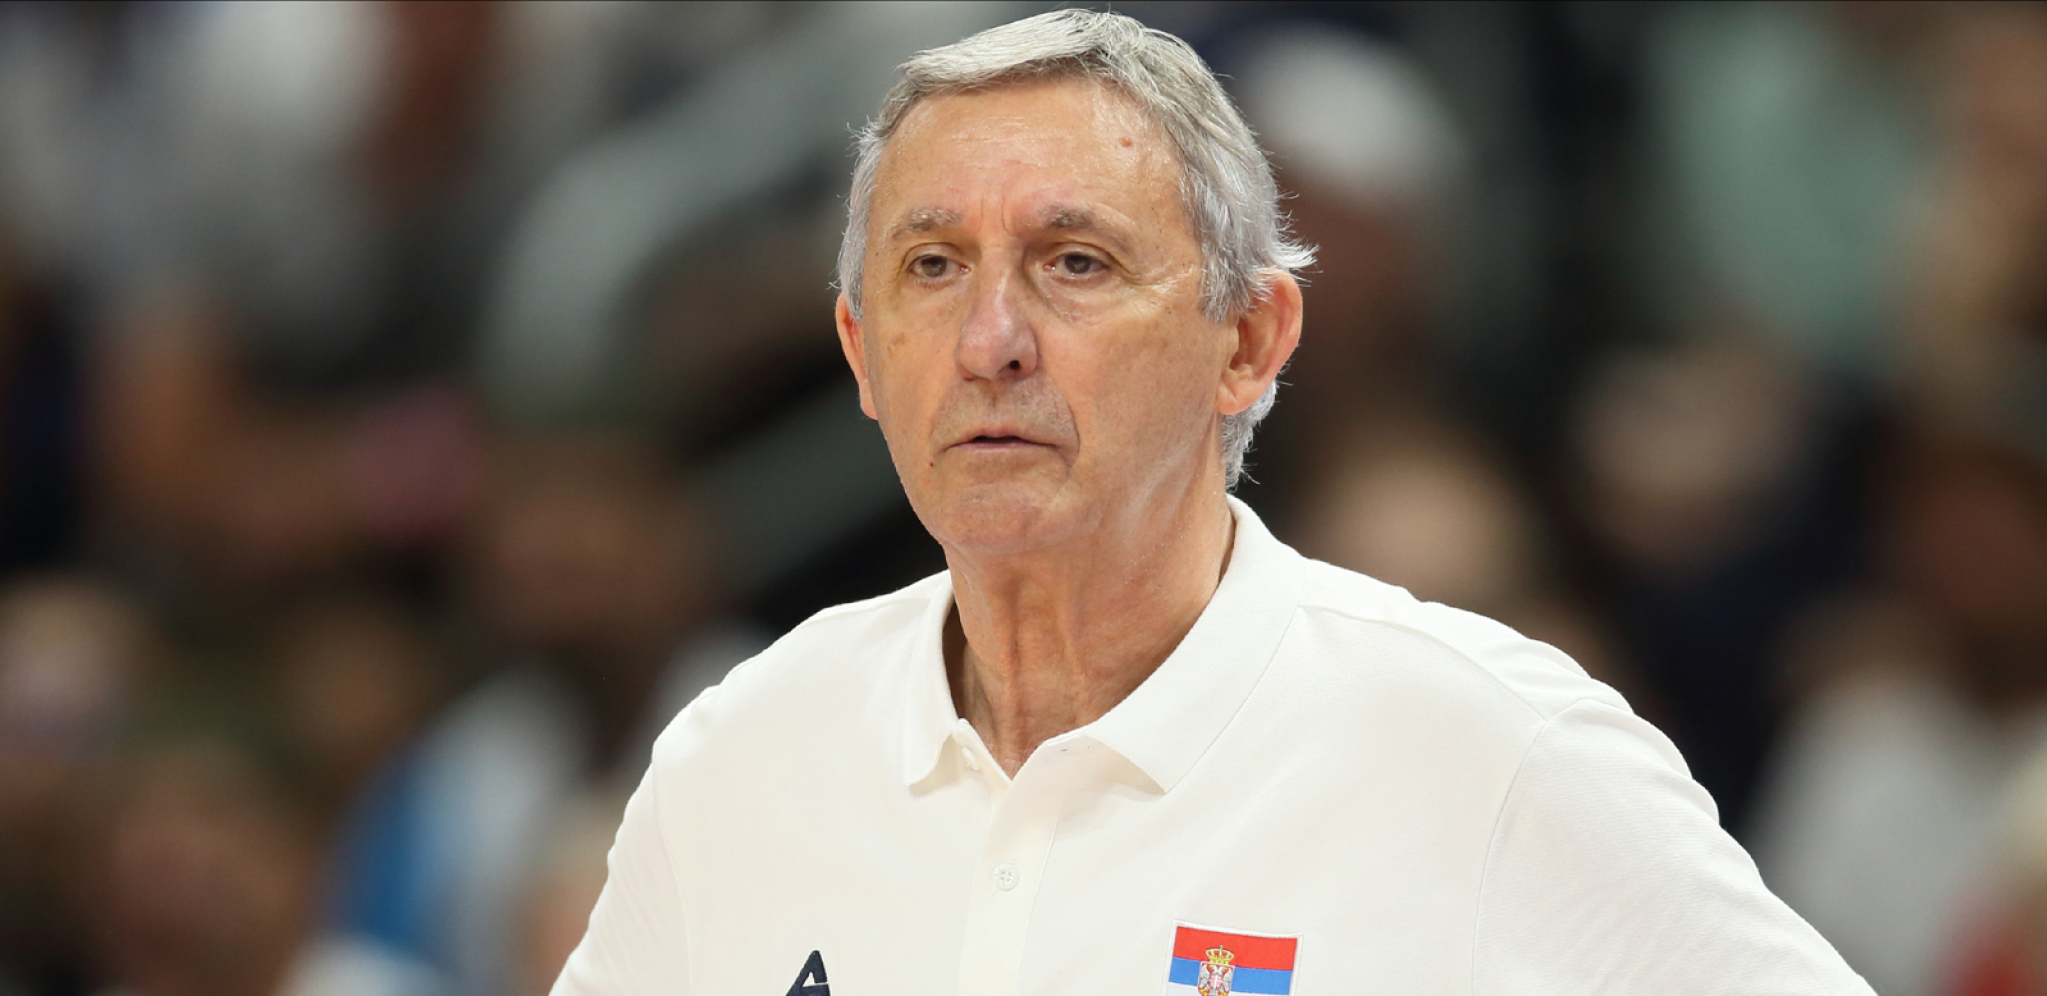 KARI PEŠIĆ TRLJA RUKE Iz NBA stigla velika vest: Srbija dobija ozbiljno pojačanje za Svetsko prvenstvo